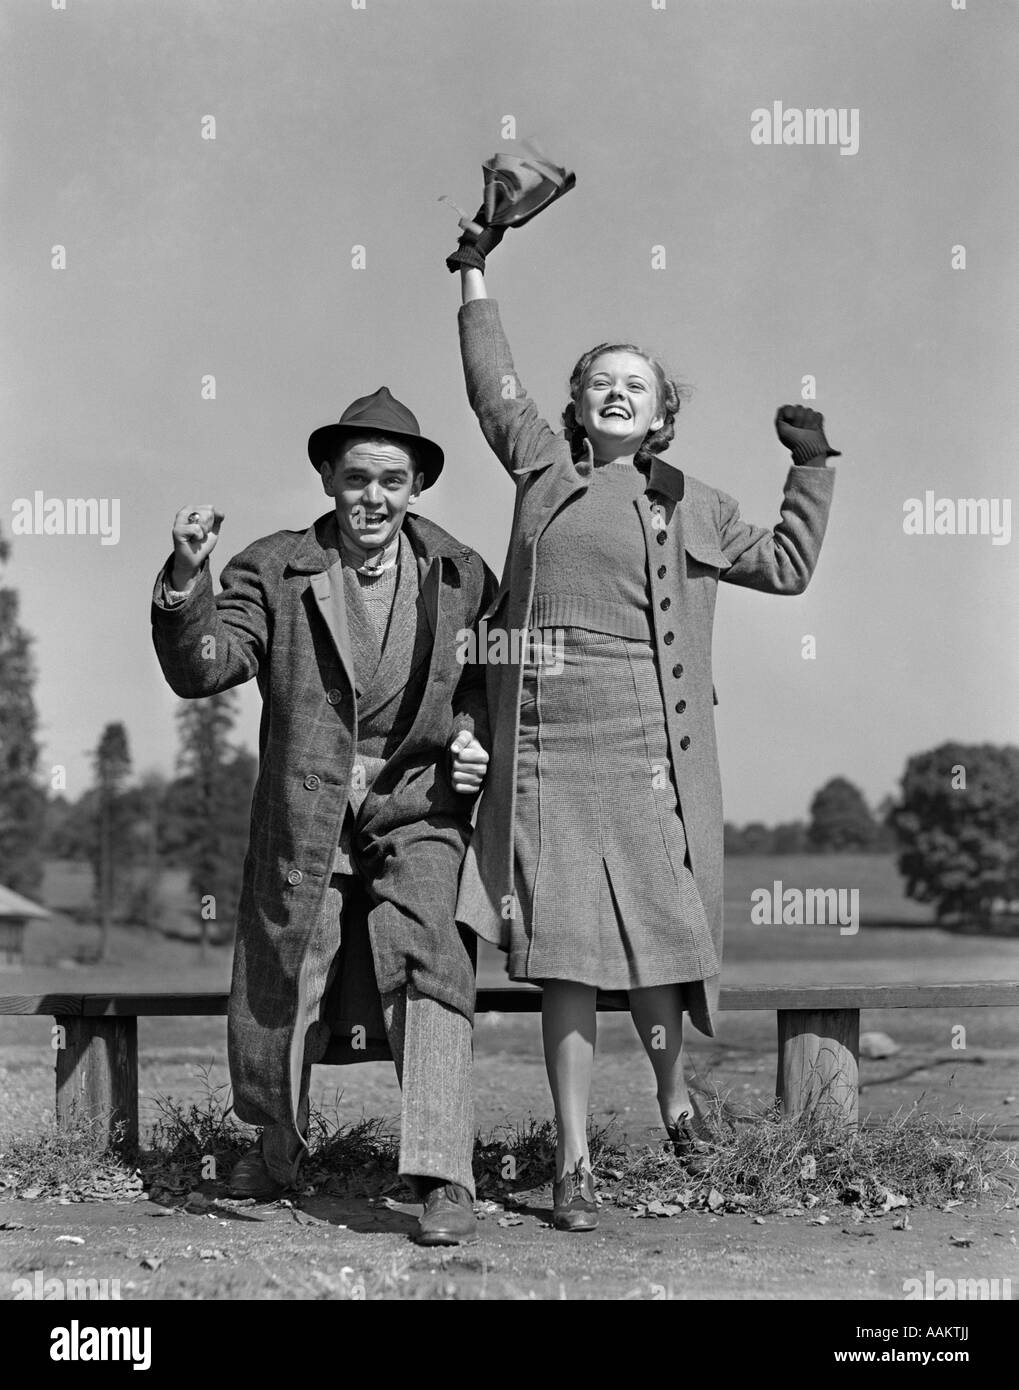 1940 YOUNG TEEN COUPLE Garçon Fille banc portant des manteaux de spectateurs heureux heureux événement sportif Banque D'Images